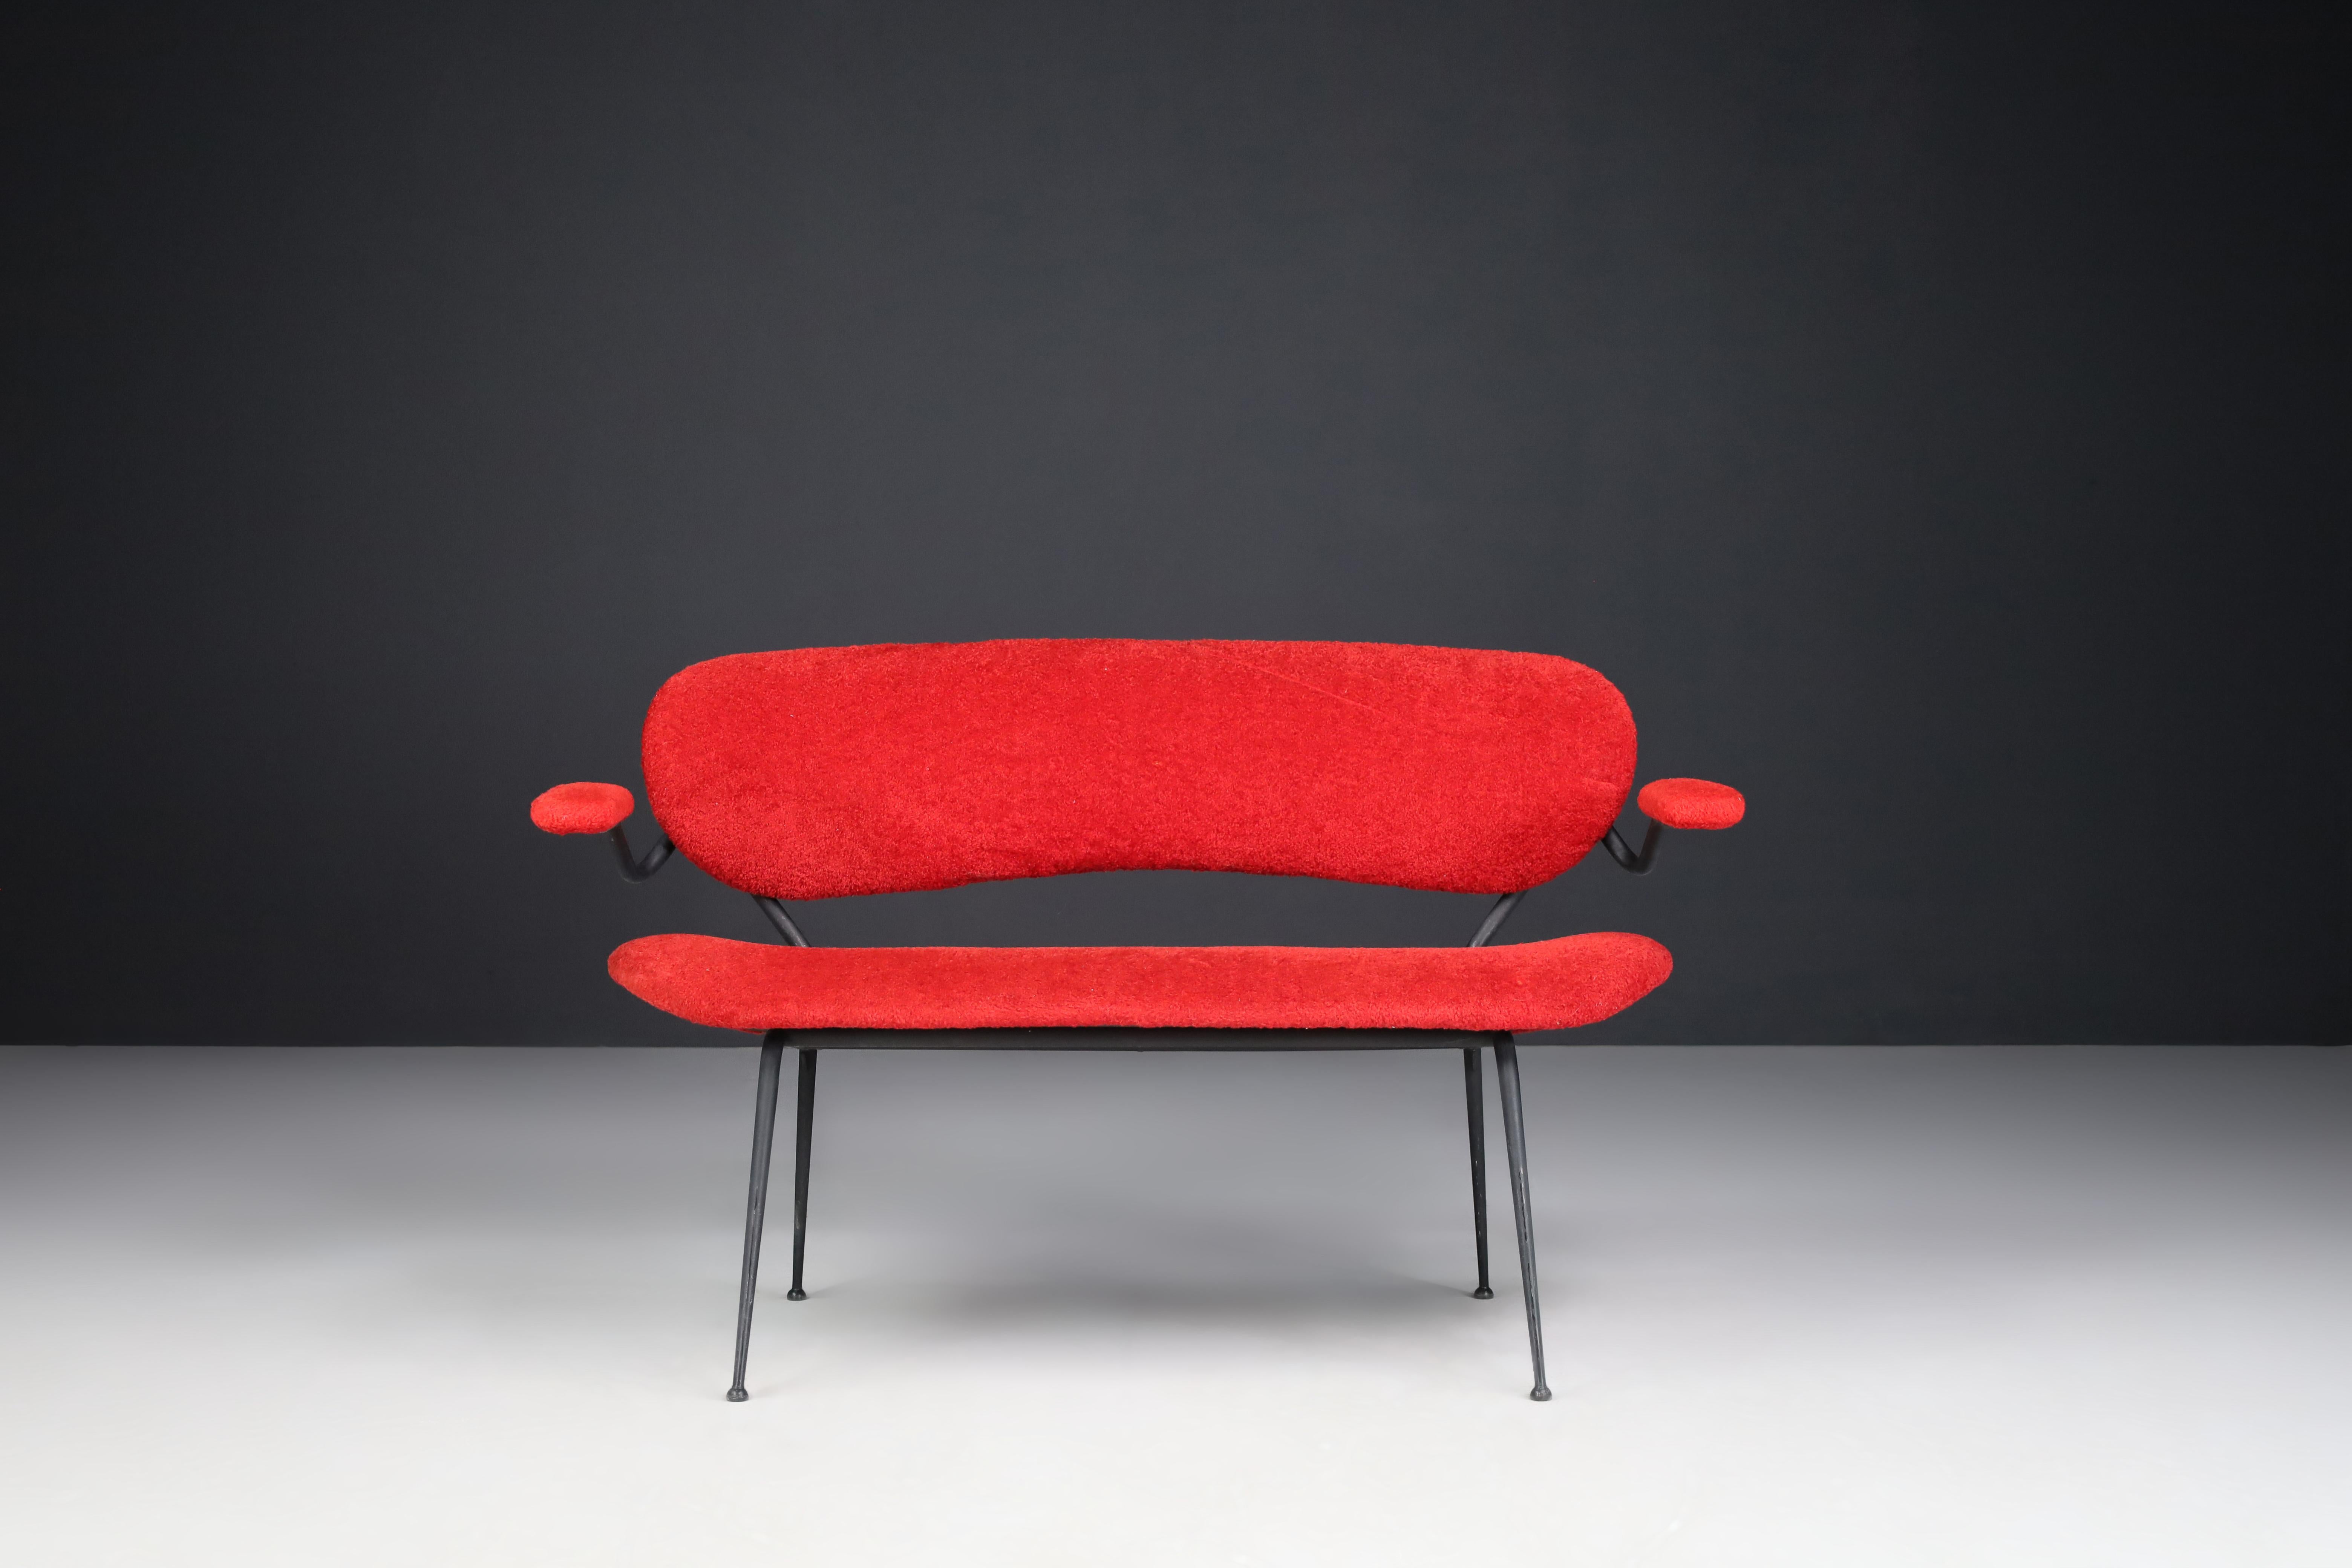 Rotes Sofa/Bank der Jahrhundertmitte von Gastone Rinaldi, Italien 1960er Jahre 
 
Gastone Rinaldi entwarf dieses schöne und kultige Sofa 1954 in Italien. Die Form des Sofas ist skulptural, einzigartig und elegant. Die Beine des Sofas sind sehr